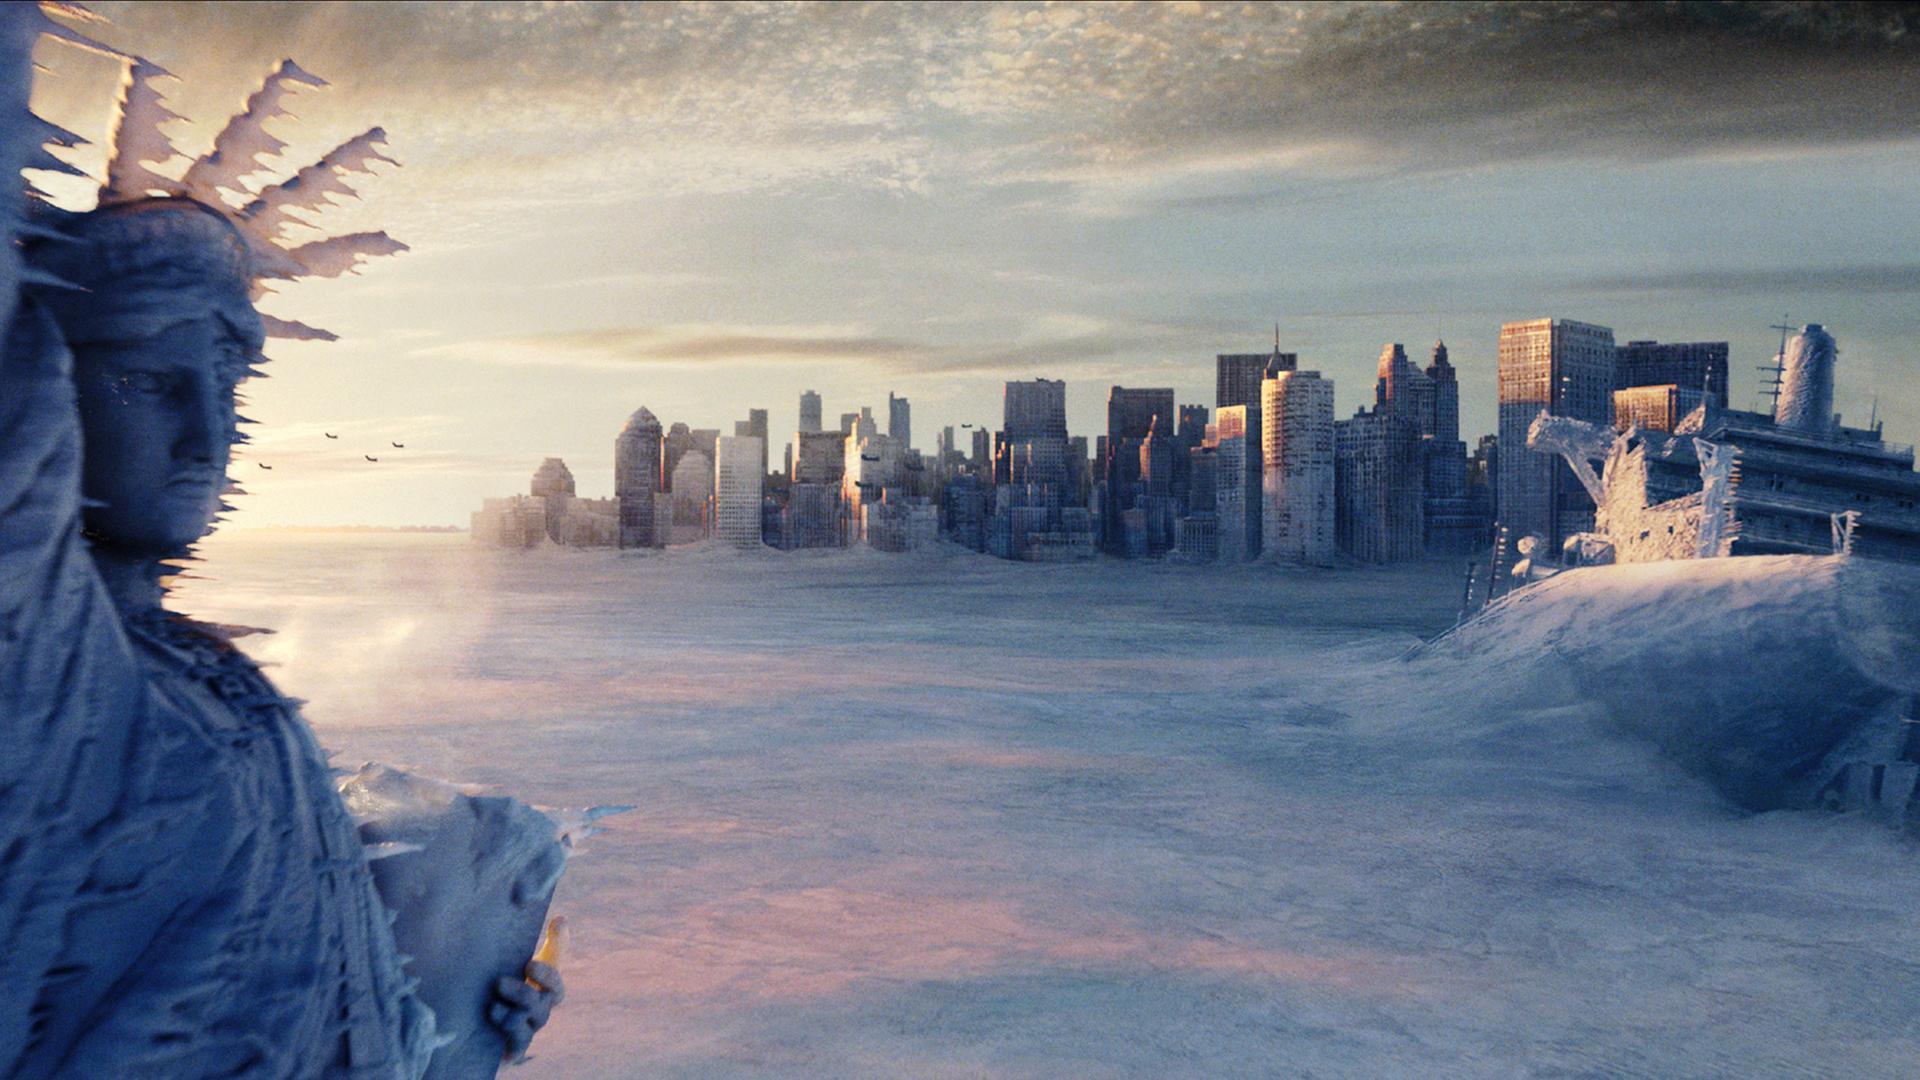 Die Filmszene zeigt die zugefrorene Freiheitsstatue vor den mit Eis bedeckten Wolkenkratzern von New York.